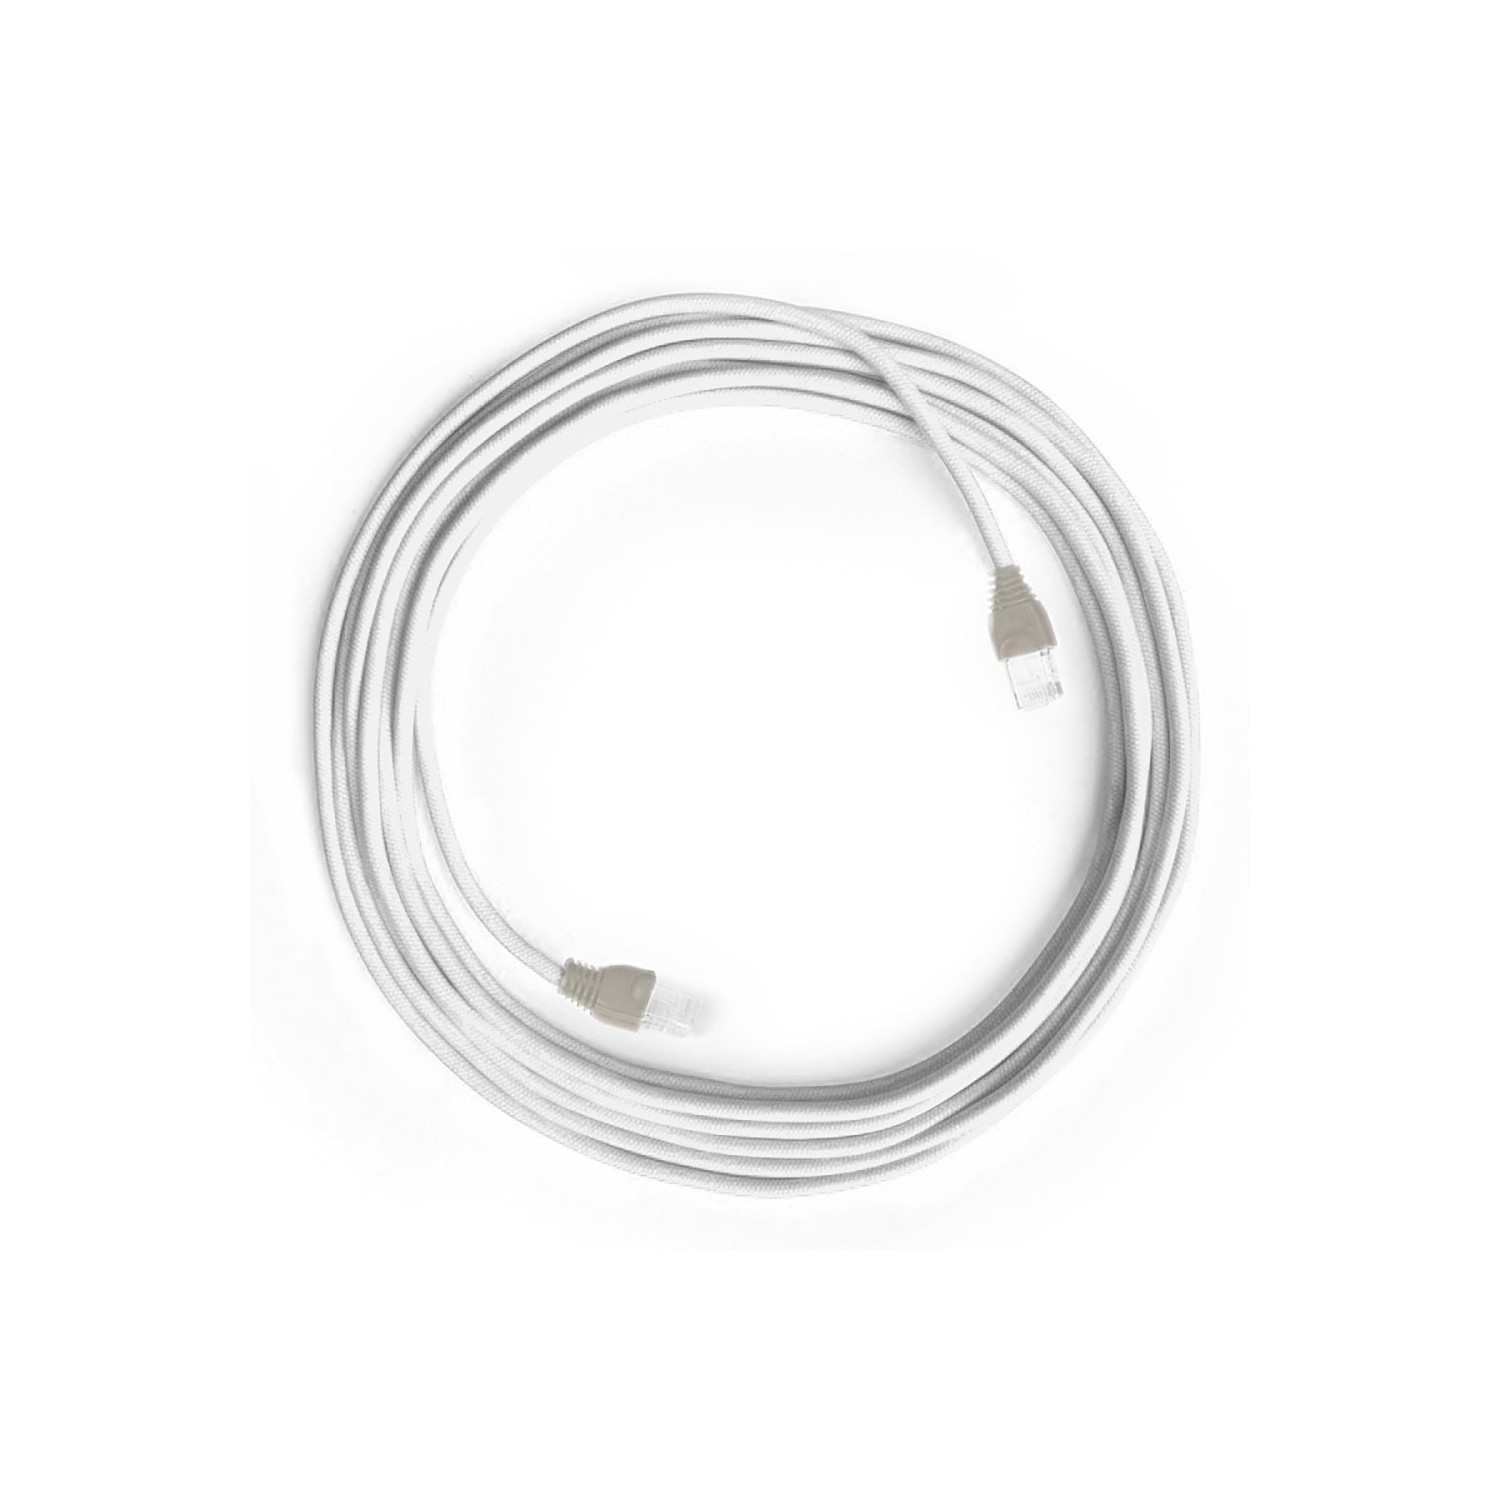 LAN Ethernet kábel Cat 5e RJ45 csatlakozókkal - pamut szövet RC01 Fehér